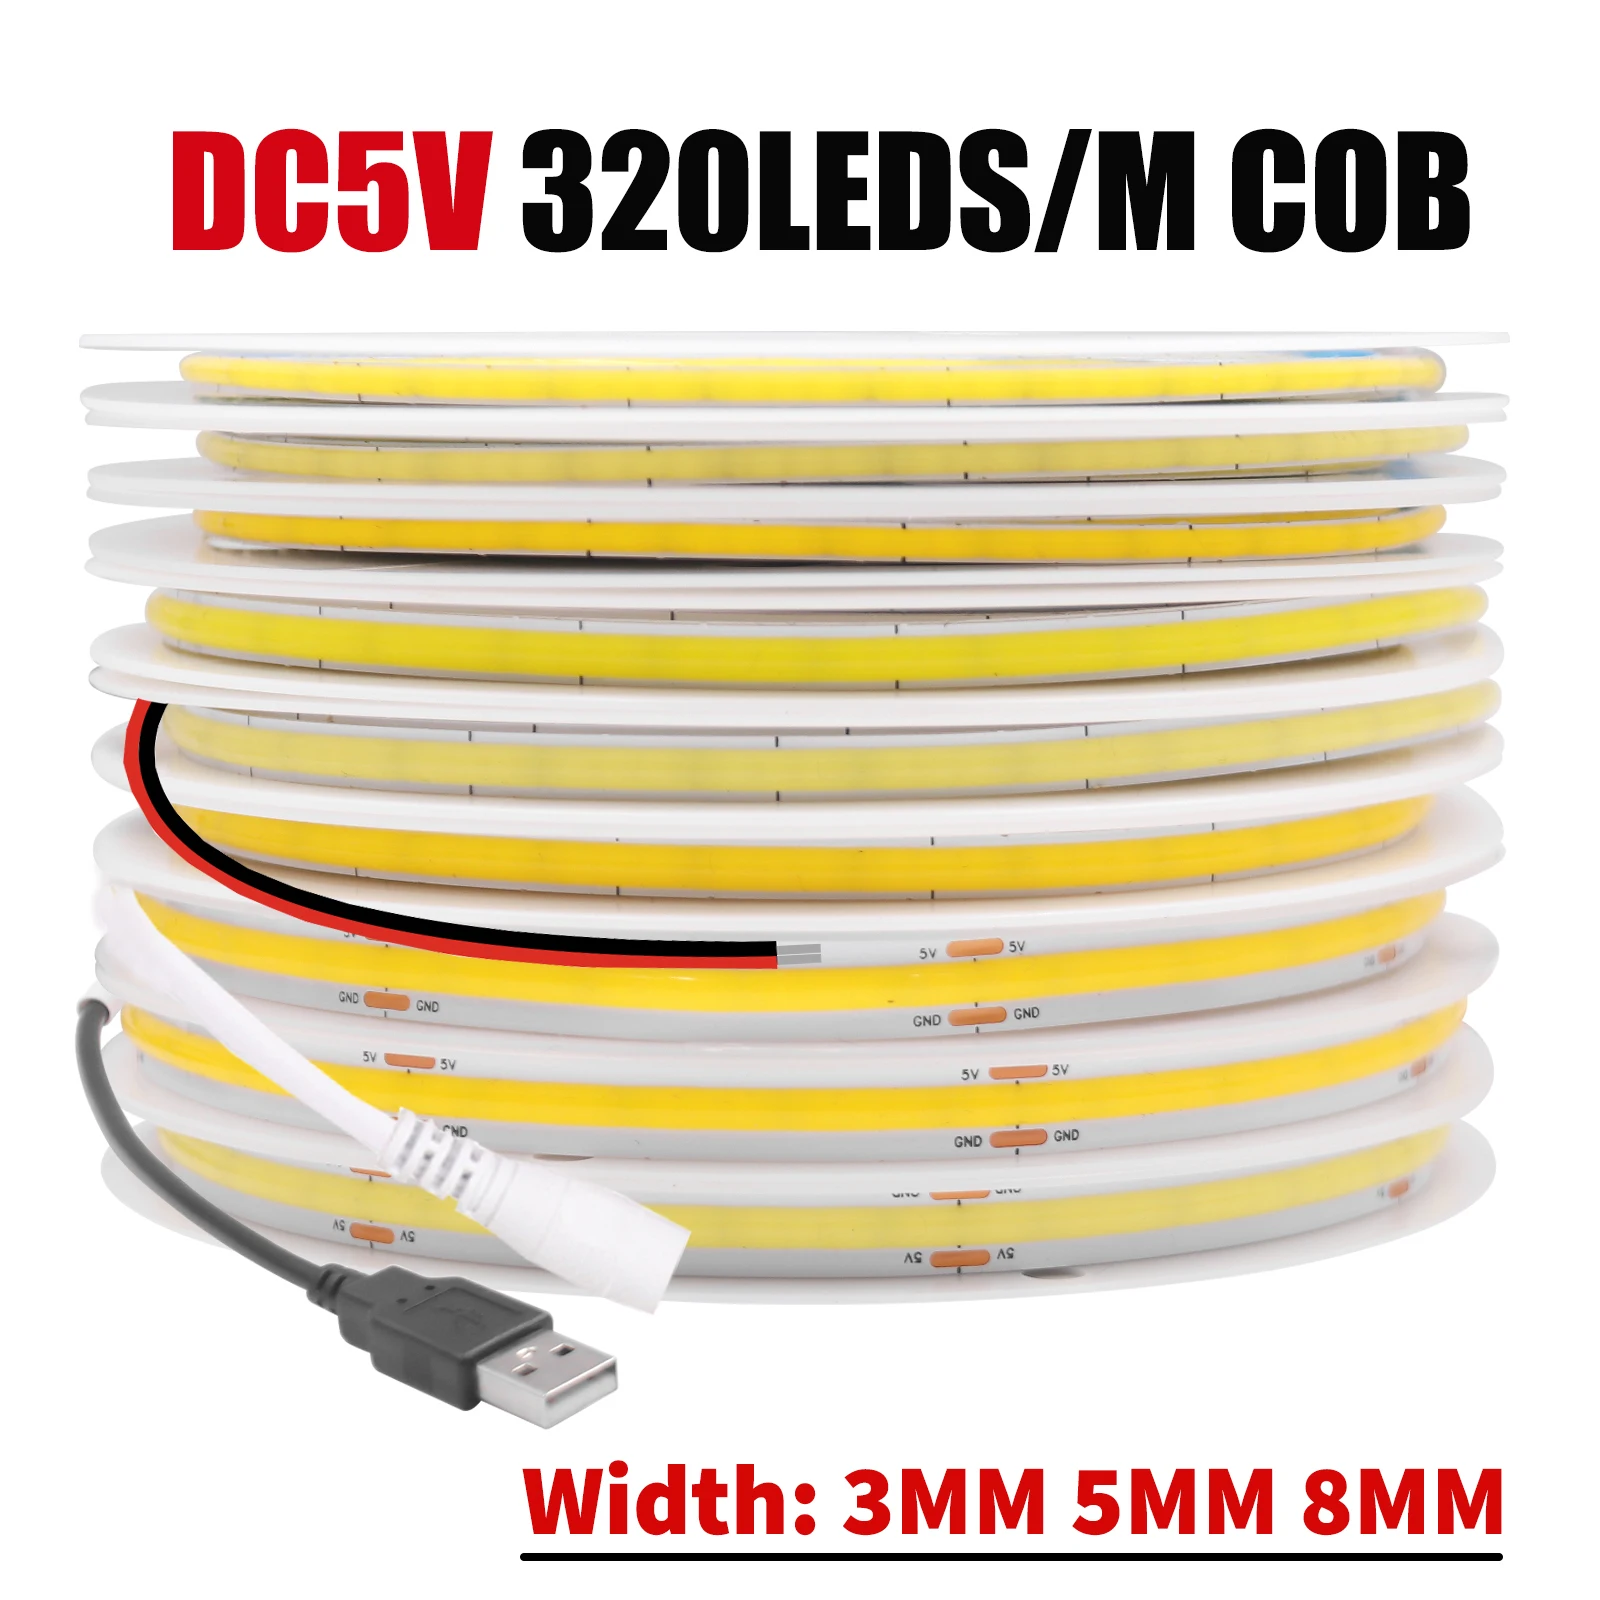 

DC 5V COB LED Strip 320Leds/M Width 3MM 5MM 8MM Flexible COB Light Bar High Density Linear Lighting 3000K 4000K 6000K White